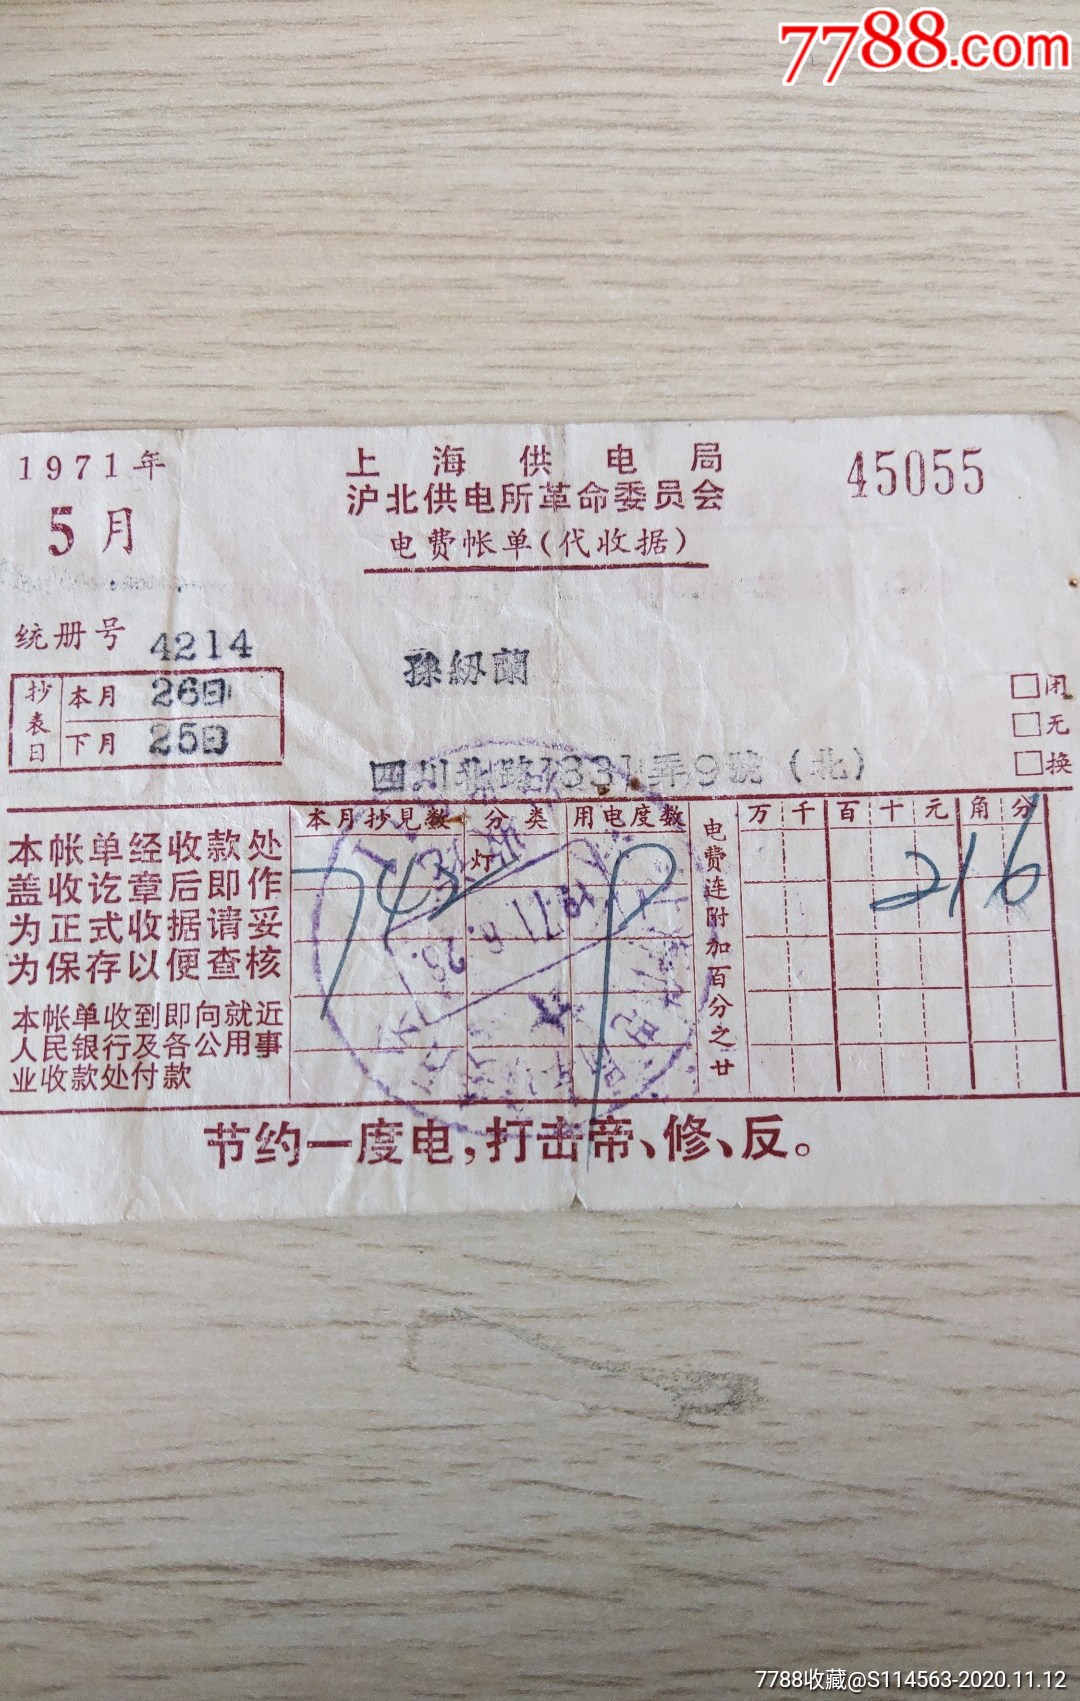 上海供电局沪北供电所革命委员会电费账单代收据